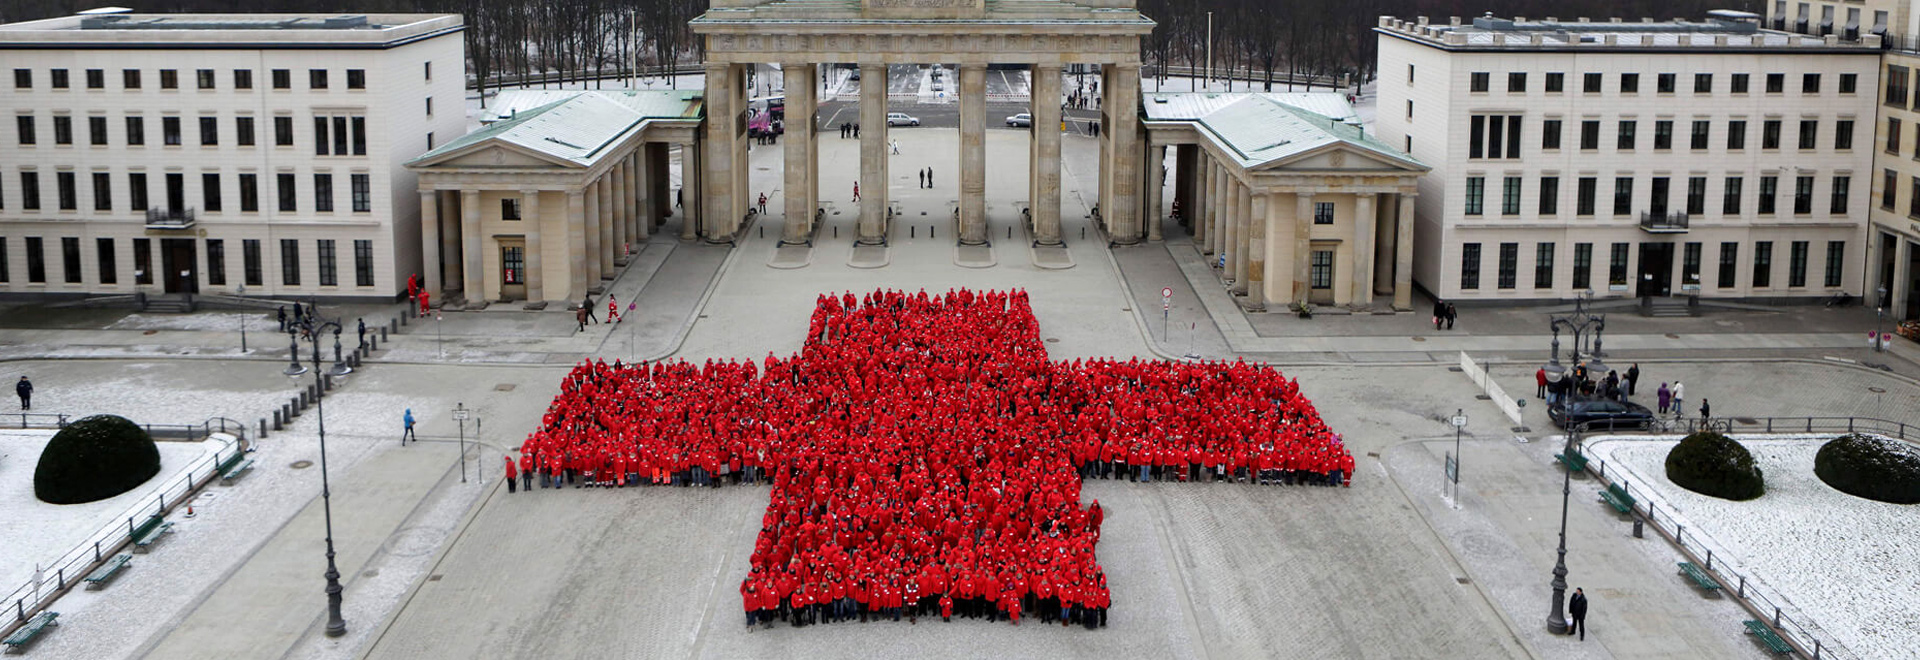 Hunderte DRK-Mitarbeiter formen ein Rotes Kreuz am Brandenburger Tor